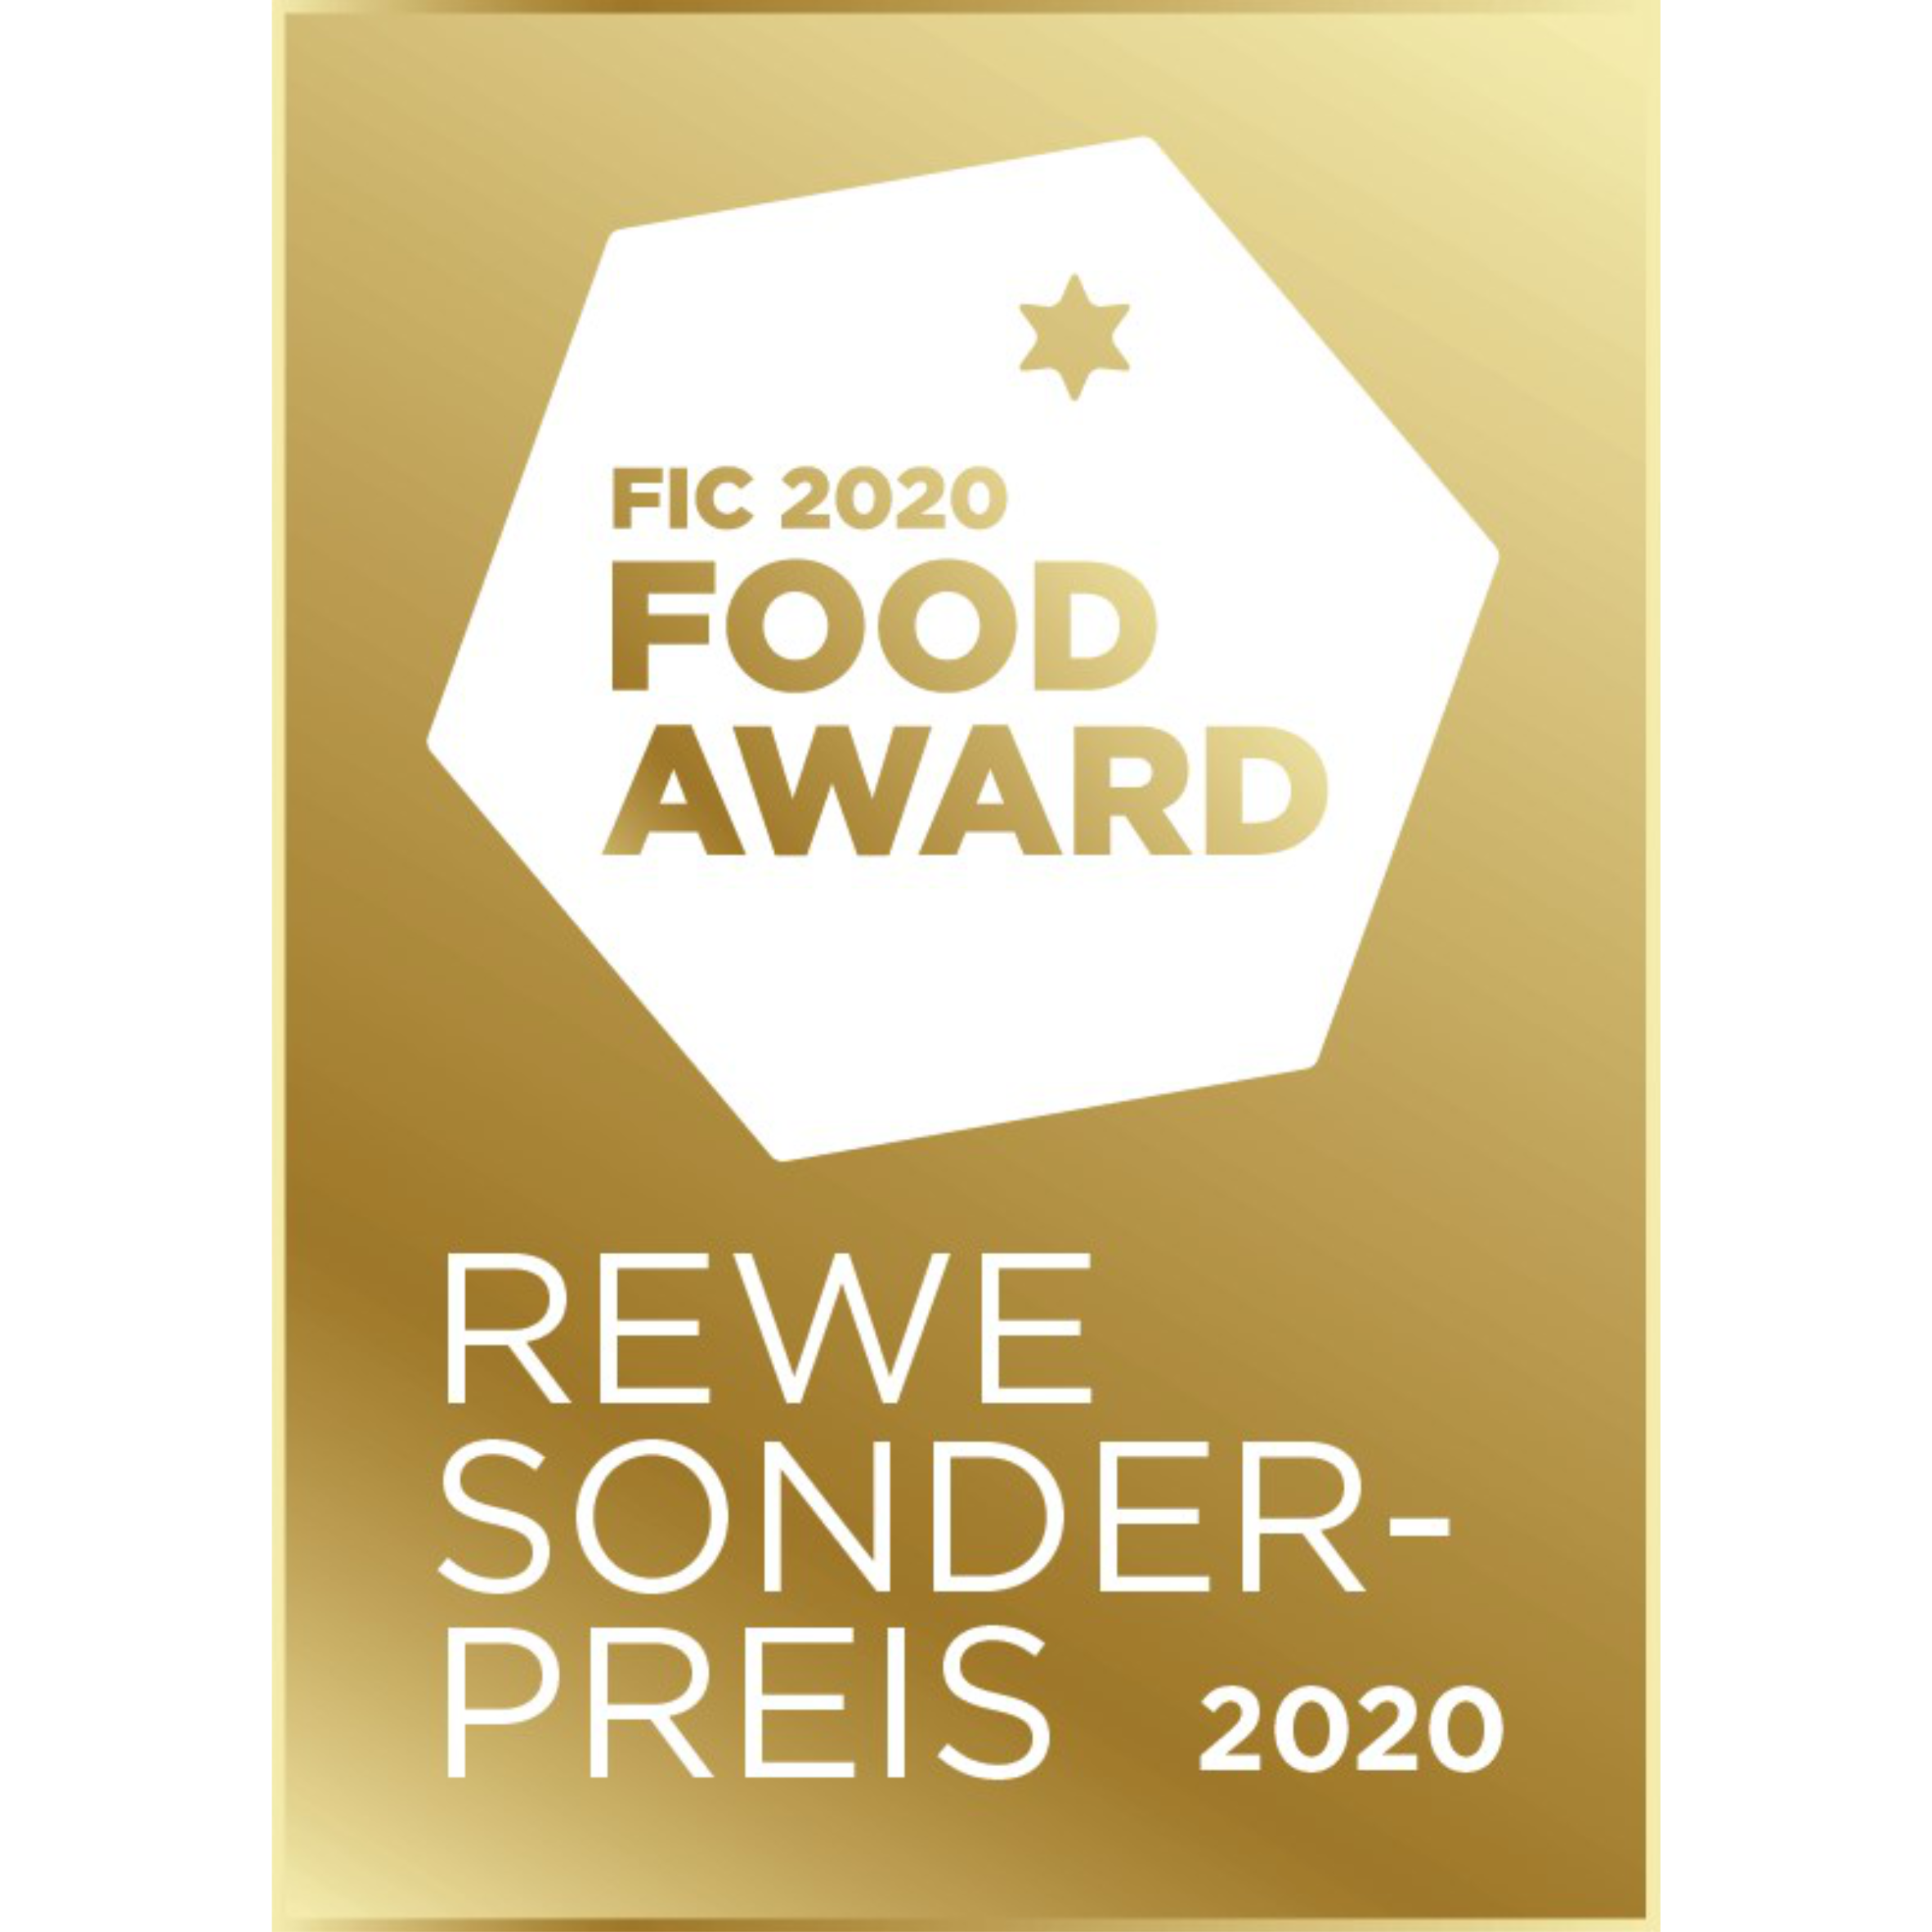 Food Innovation Camp Rewe Sonderpreis 2020